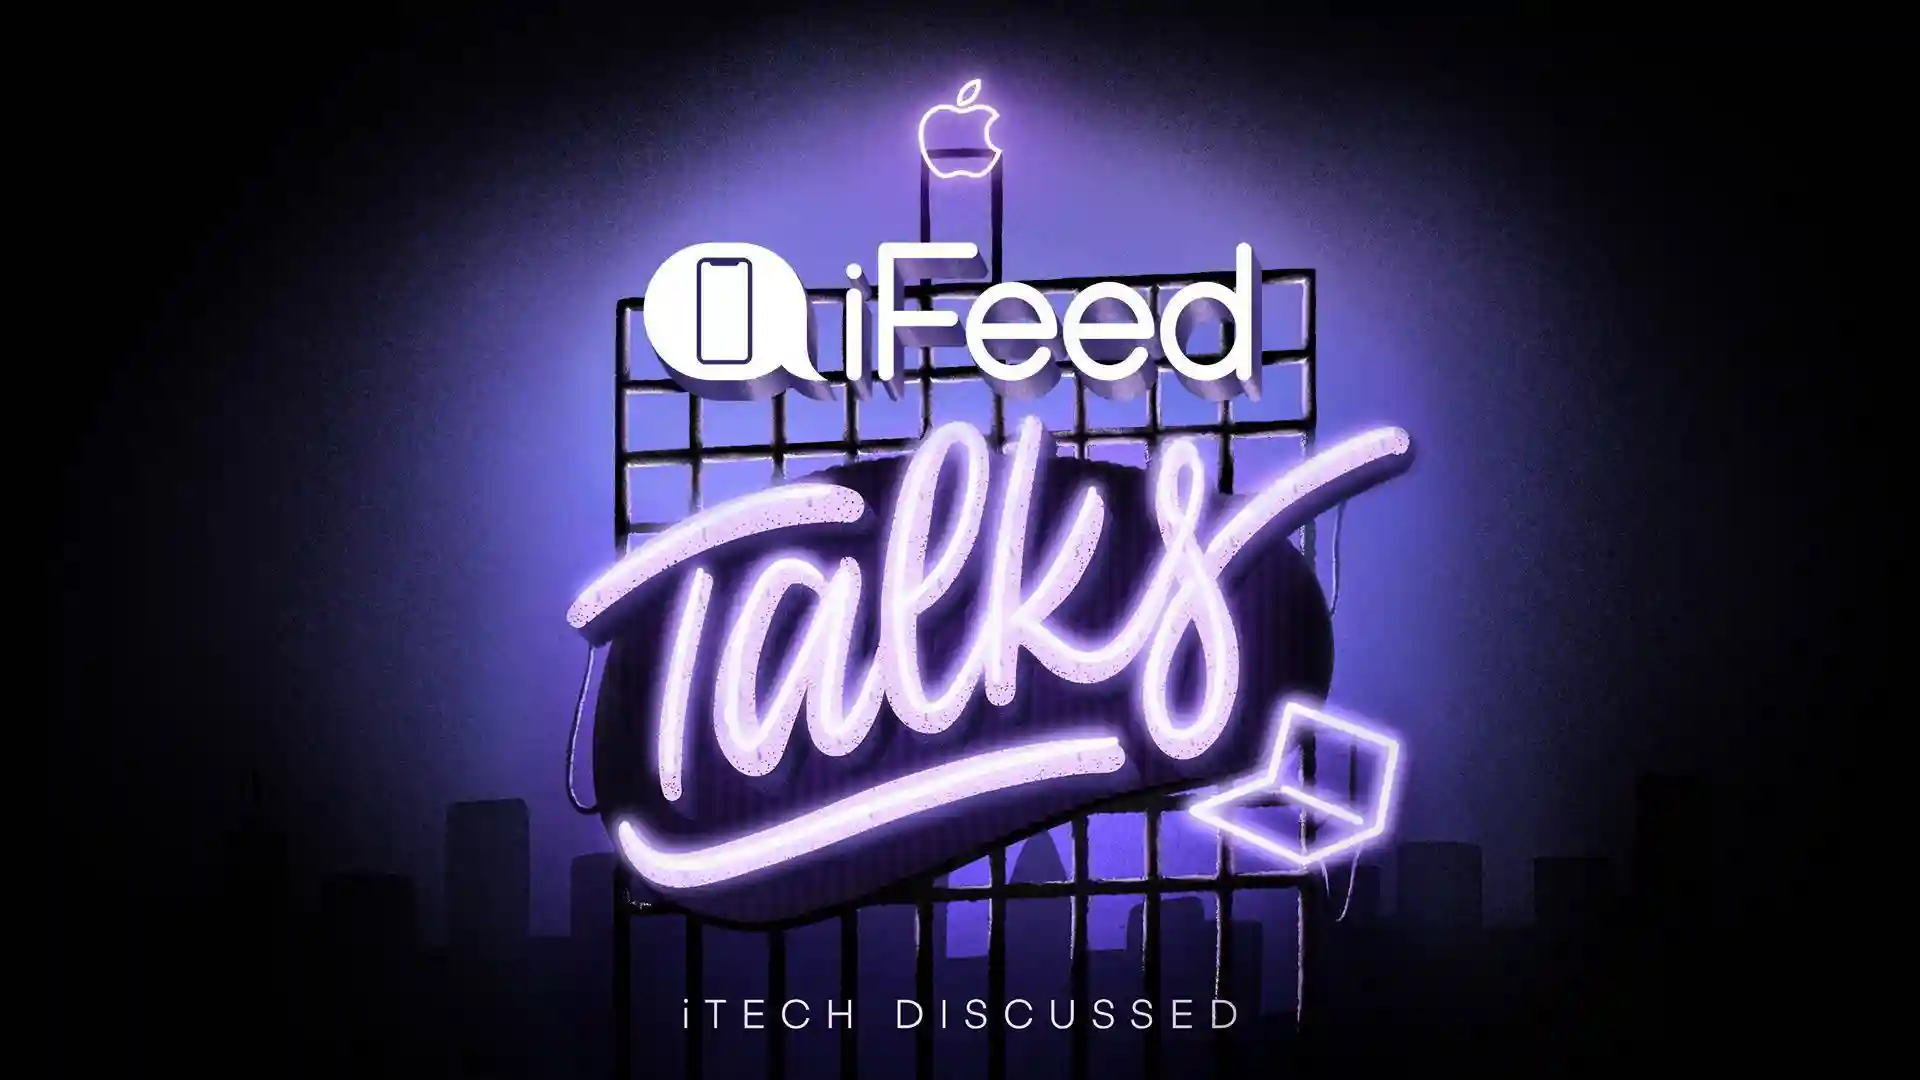 iFeed Talks - Os smartphones dos craques da seleção portuguesa, iMessage no Android e mais...